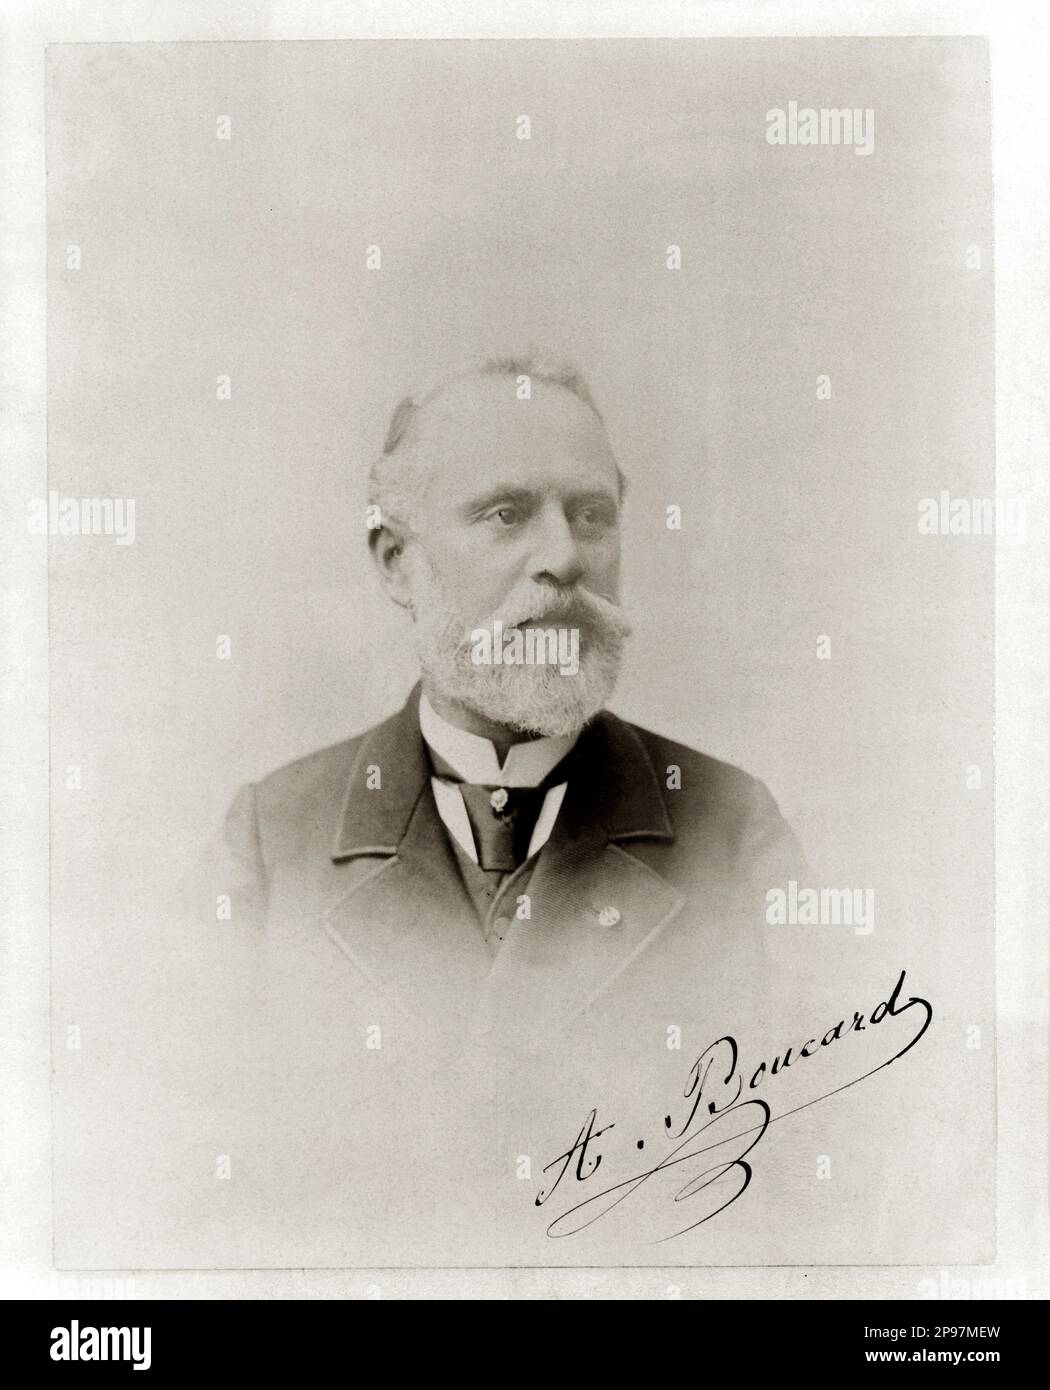 The french ornithologist ADOLPHE BOUCARD ( 1839 -  1905 )  - ORNITOLOGIA - ORNITOLOGO - ORNITHOLOGY - scientist  - foto storiche - foto storica  - scienziato - scientist  - portrait - ritratto  - FRANCE - FRANCIA - barba - beard  - BIOLOGIST  - SCIENZA - SCIENCE  - BIOLOGIST - BIOLOGO - BIOLOGIA  - tie - cravatta - collar - colletto - older ancient man - uomo anziano vecchio - signature - firma - autografo - autograph  ----   Archivio GBB Stock Photo